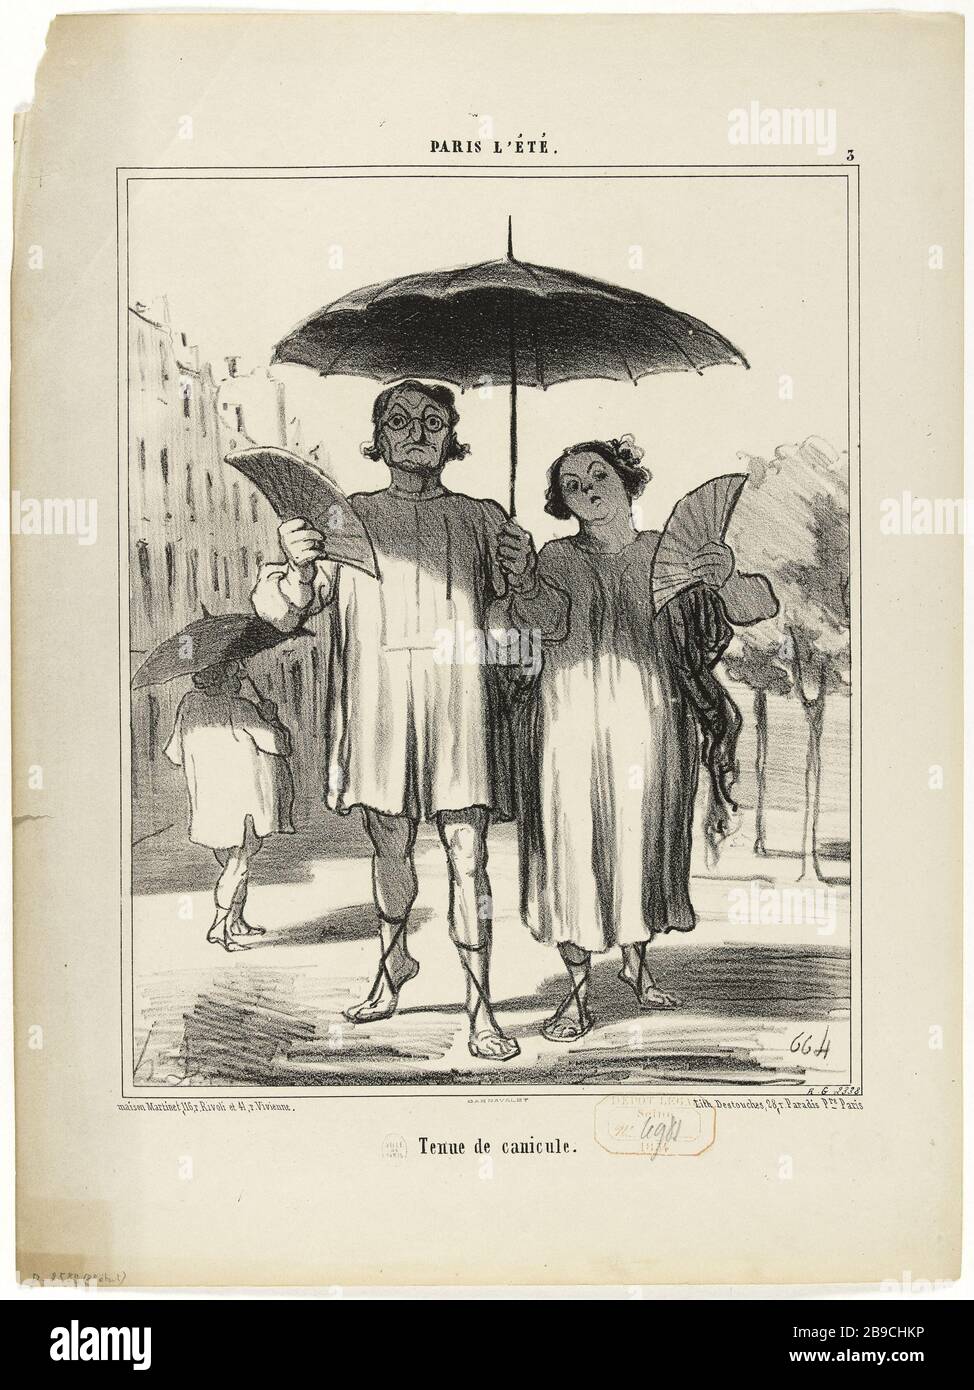 PARIS SUMMER - RESISTANCE HEAT WAVE (Pl.3) Honoré Daumier (1808-1879).'Paris l'été - Tenue de canicule (pl.3)'. Lithographie en noir. Paris, musée Carnavalet. Stock Photo